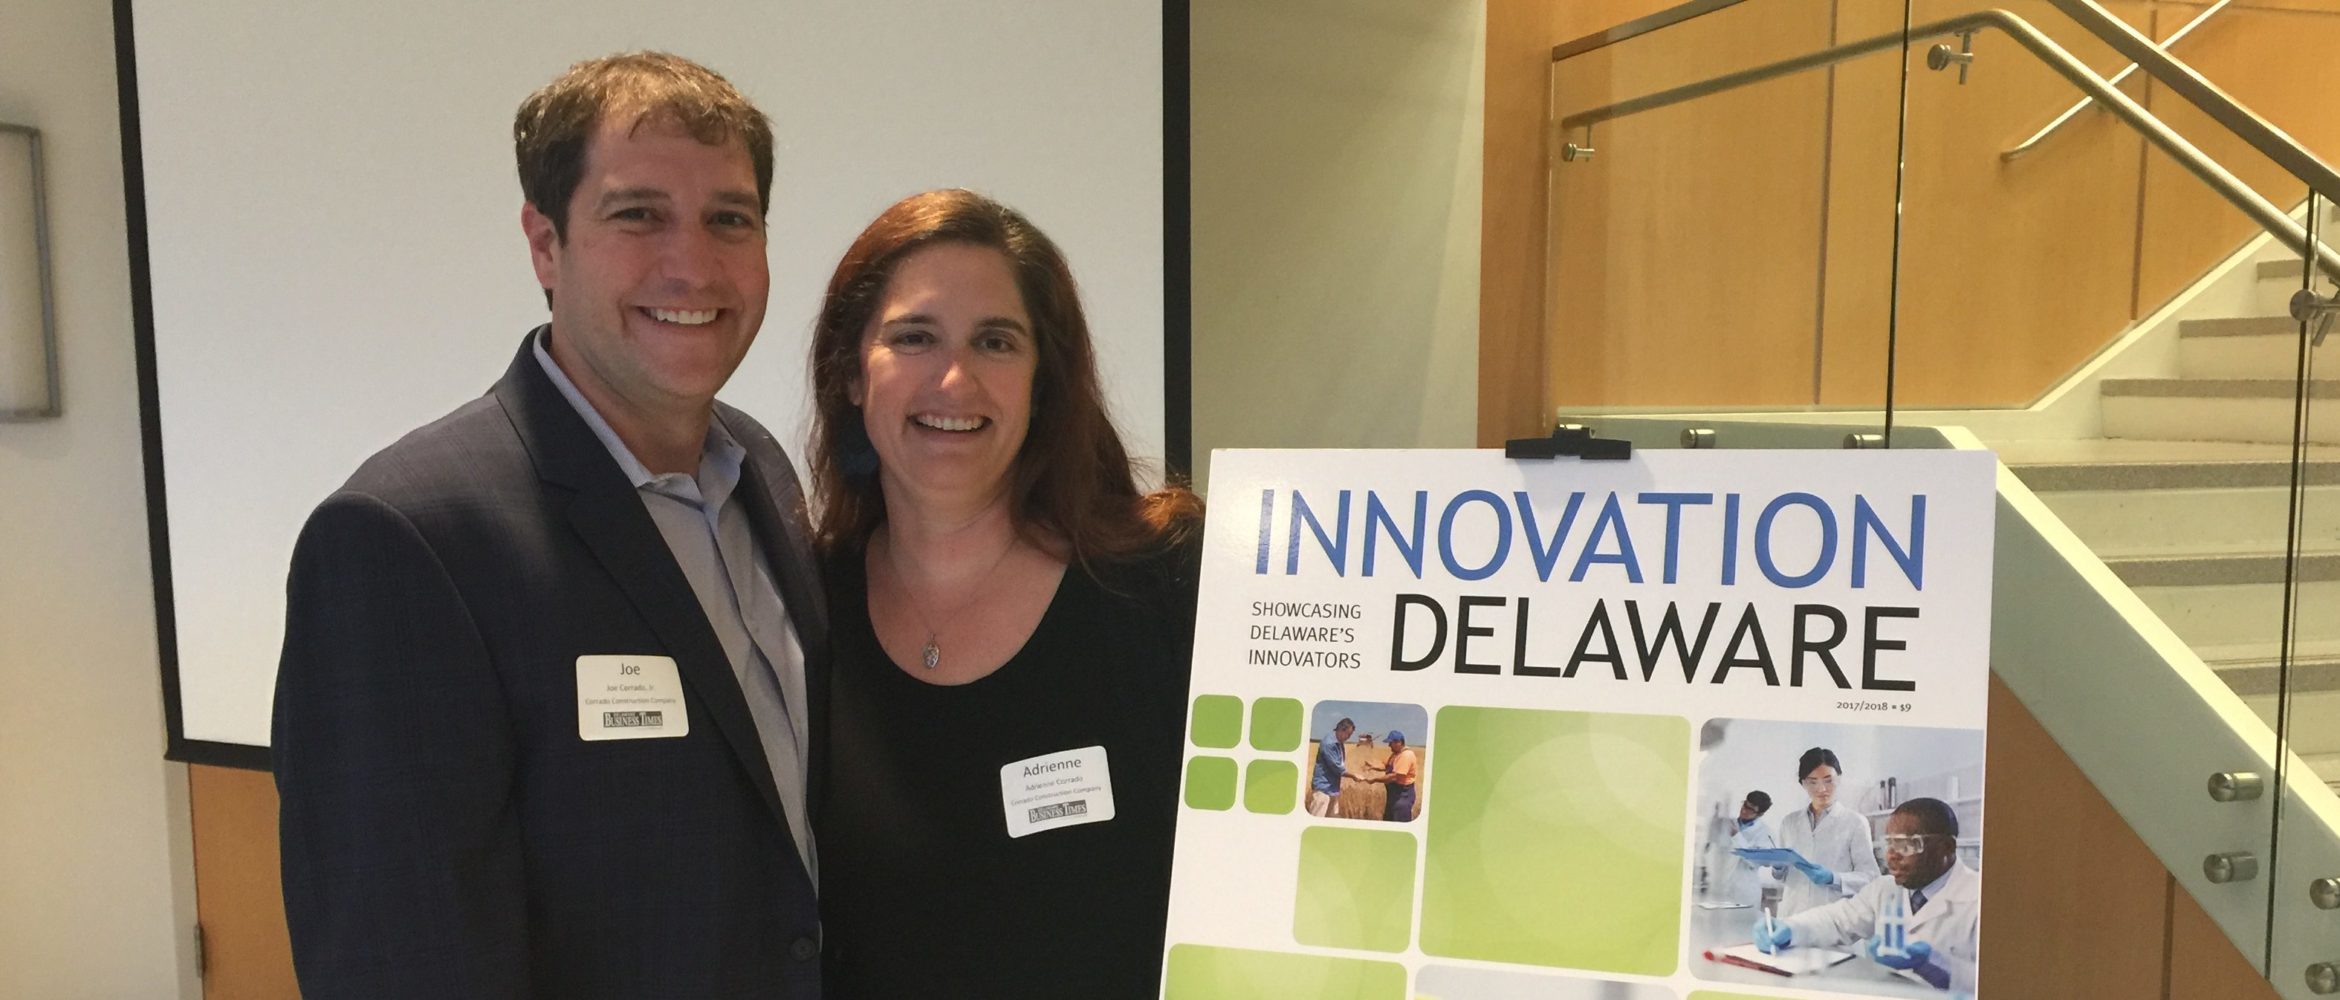 Innovation Delaware